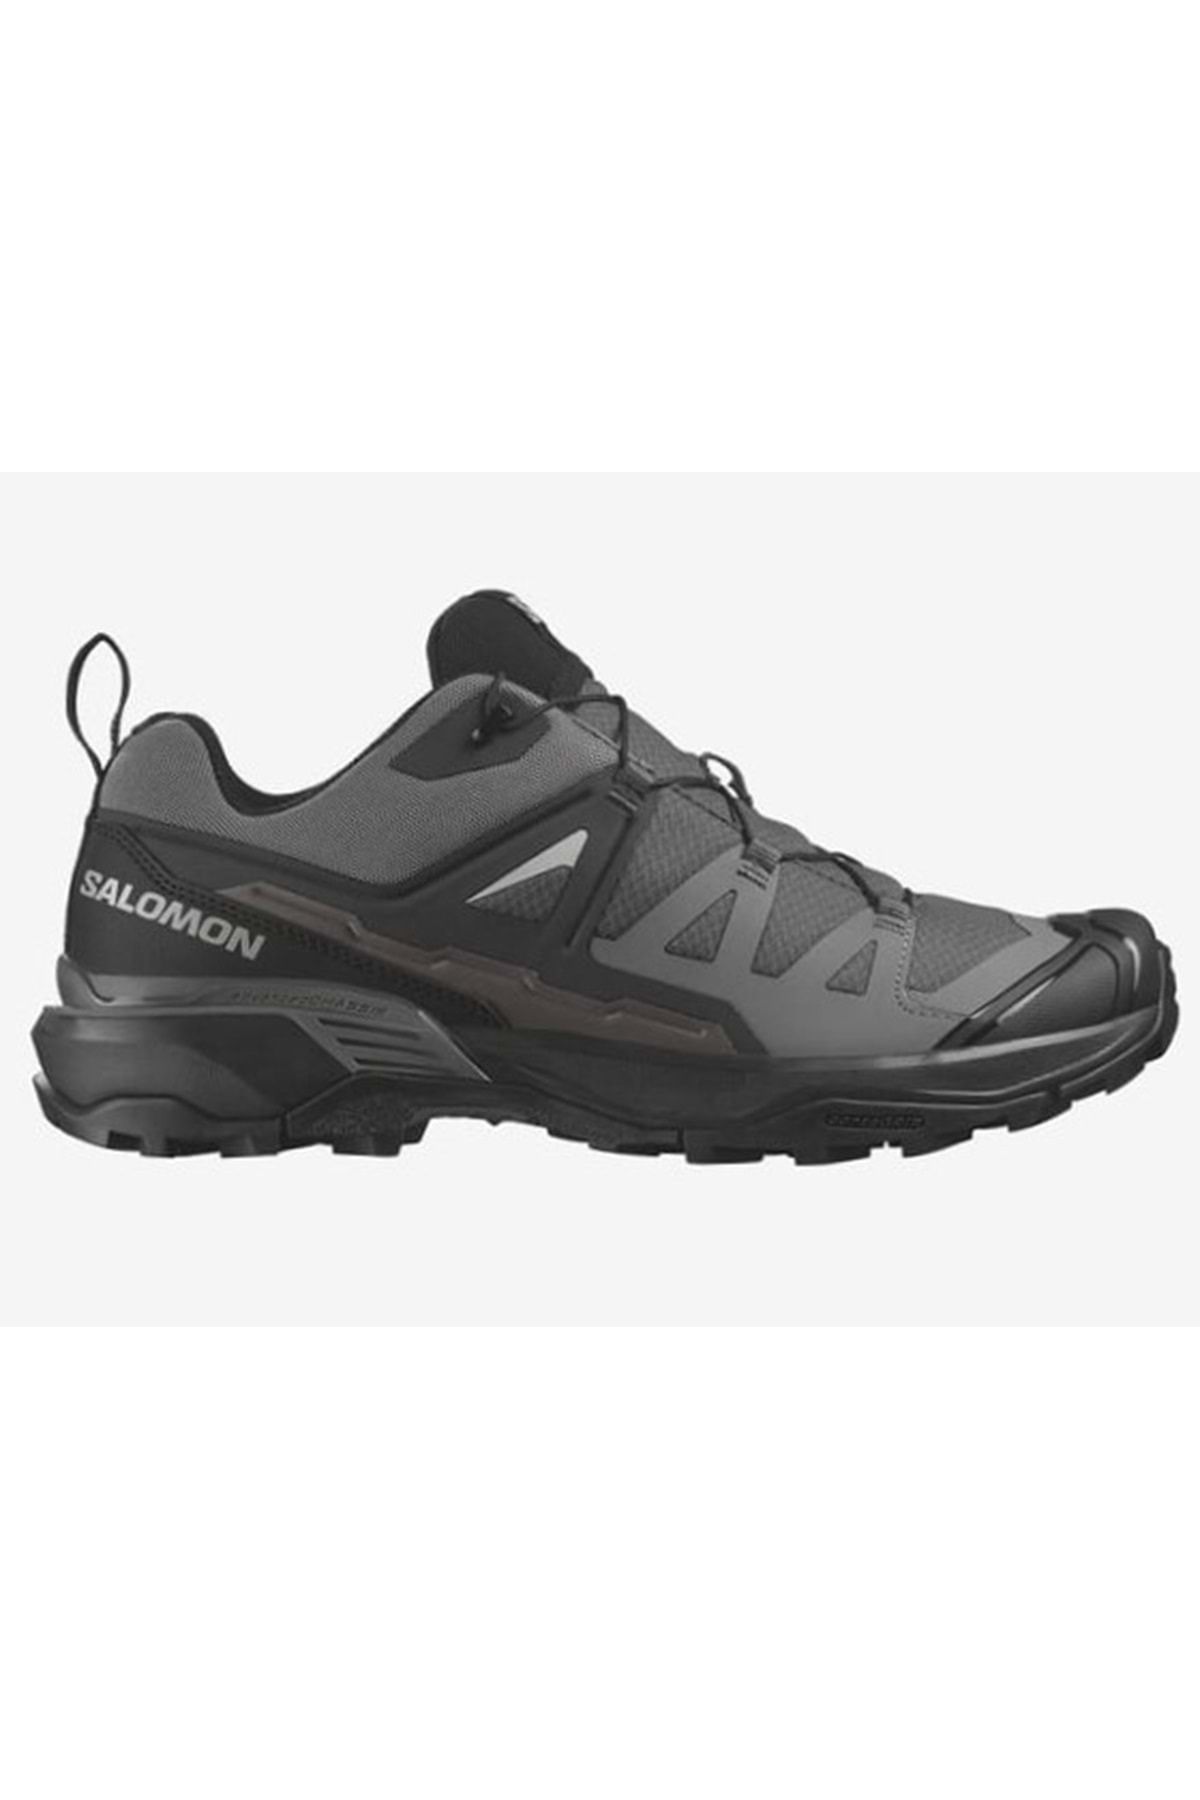 Salomon X-ultra 360 L47448300 Patika Koşu Ayakkabısı Erkek Spor Ayakkabı Gri